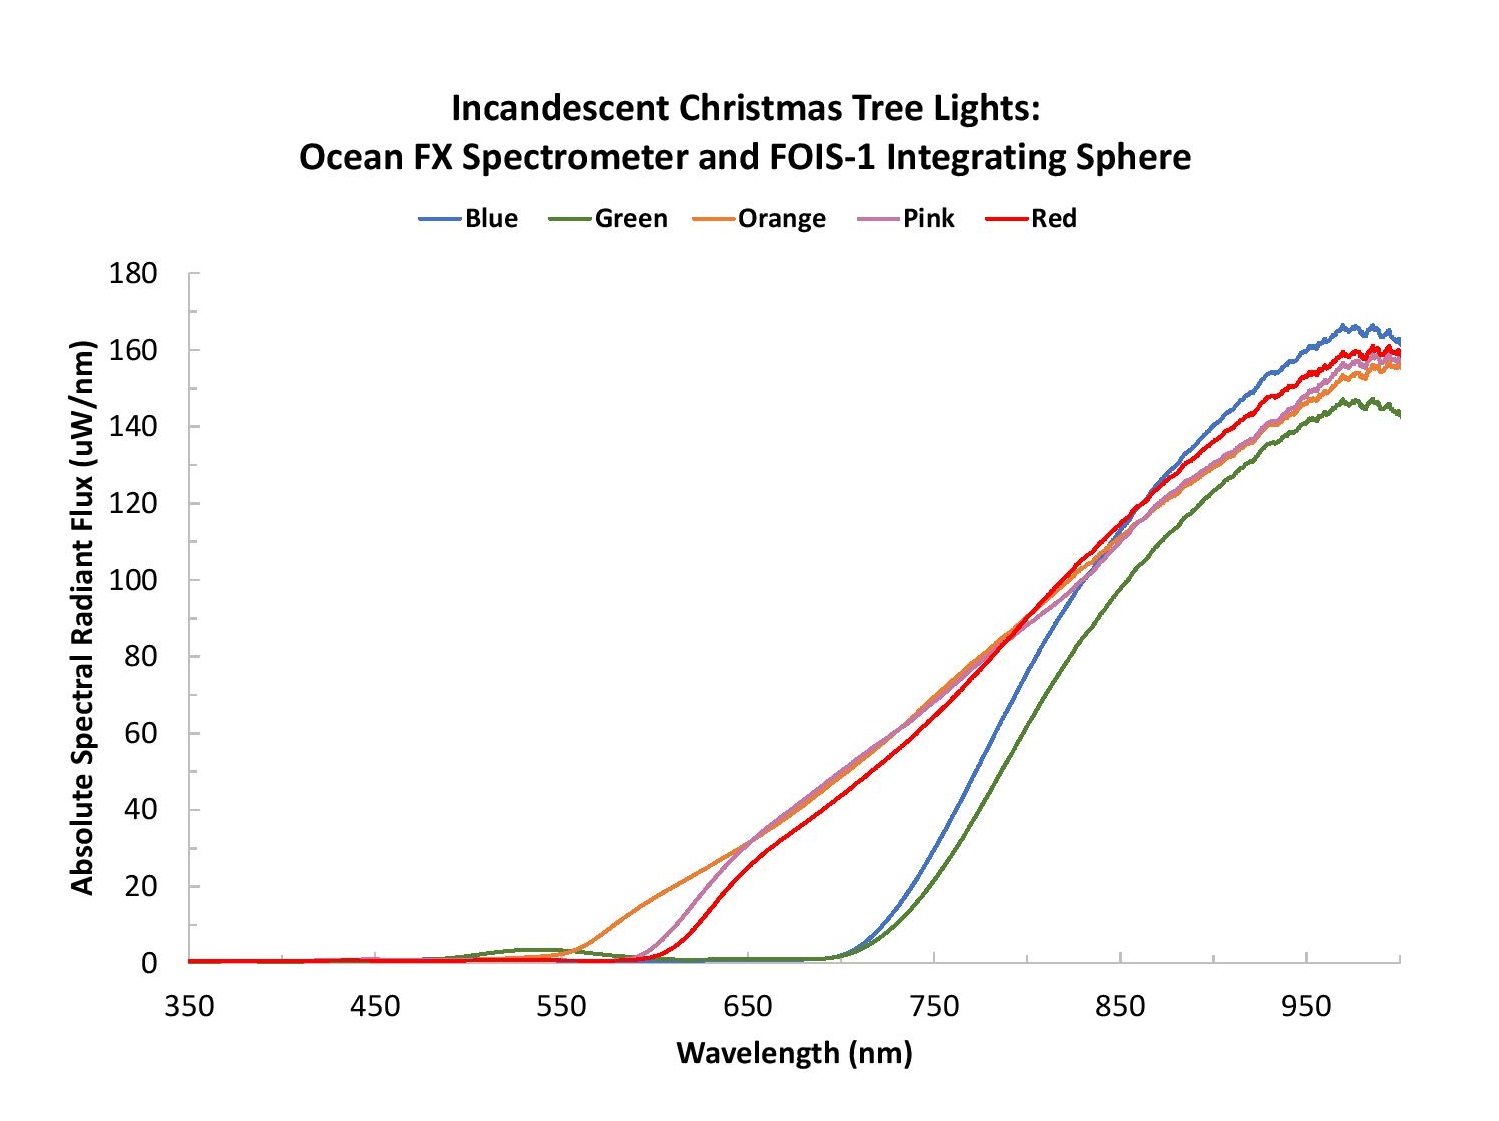 ChristmasLightsBlog_Figure 2-Incandescent lights.jpg